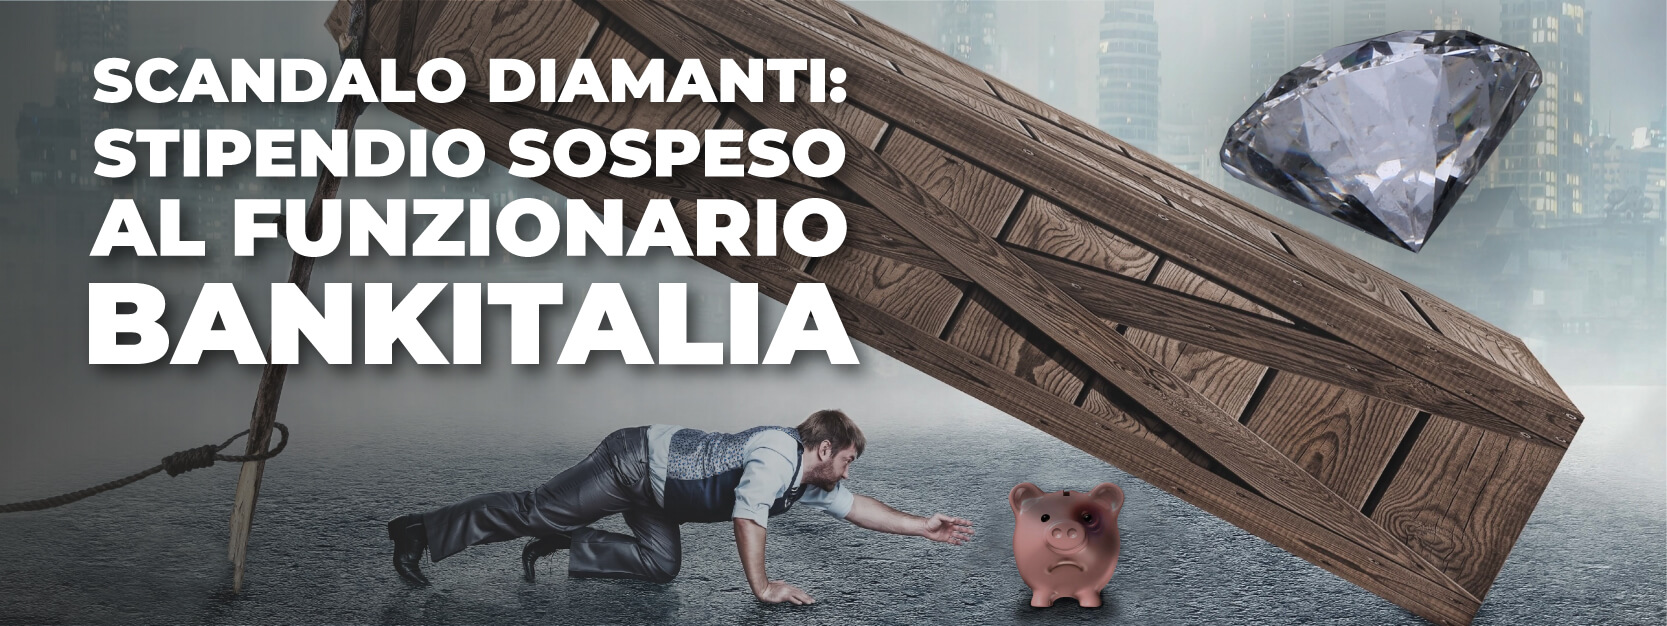 Scandalo diamanti: stipendio sospeso per un anno al funzionario di Banca d’Italia troppo zelante